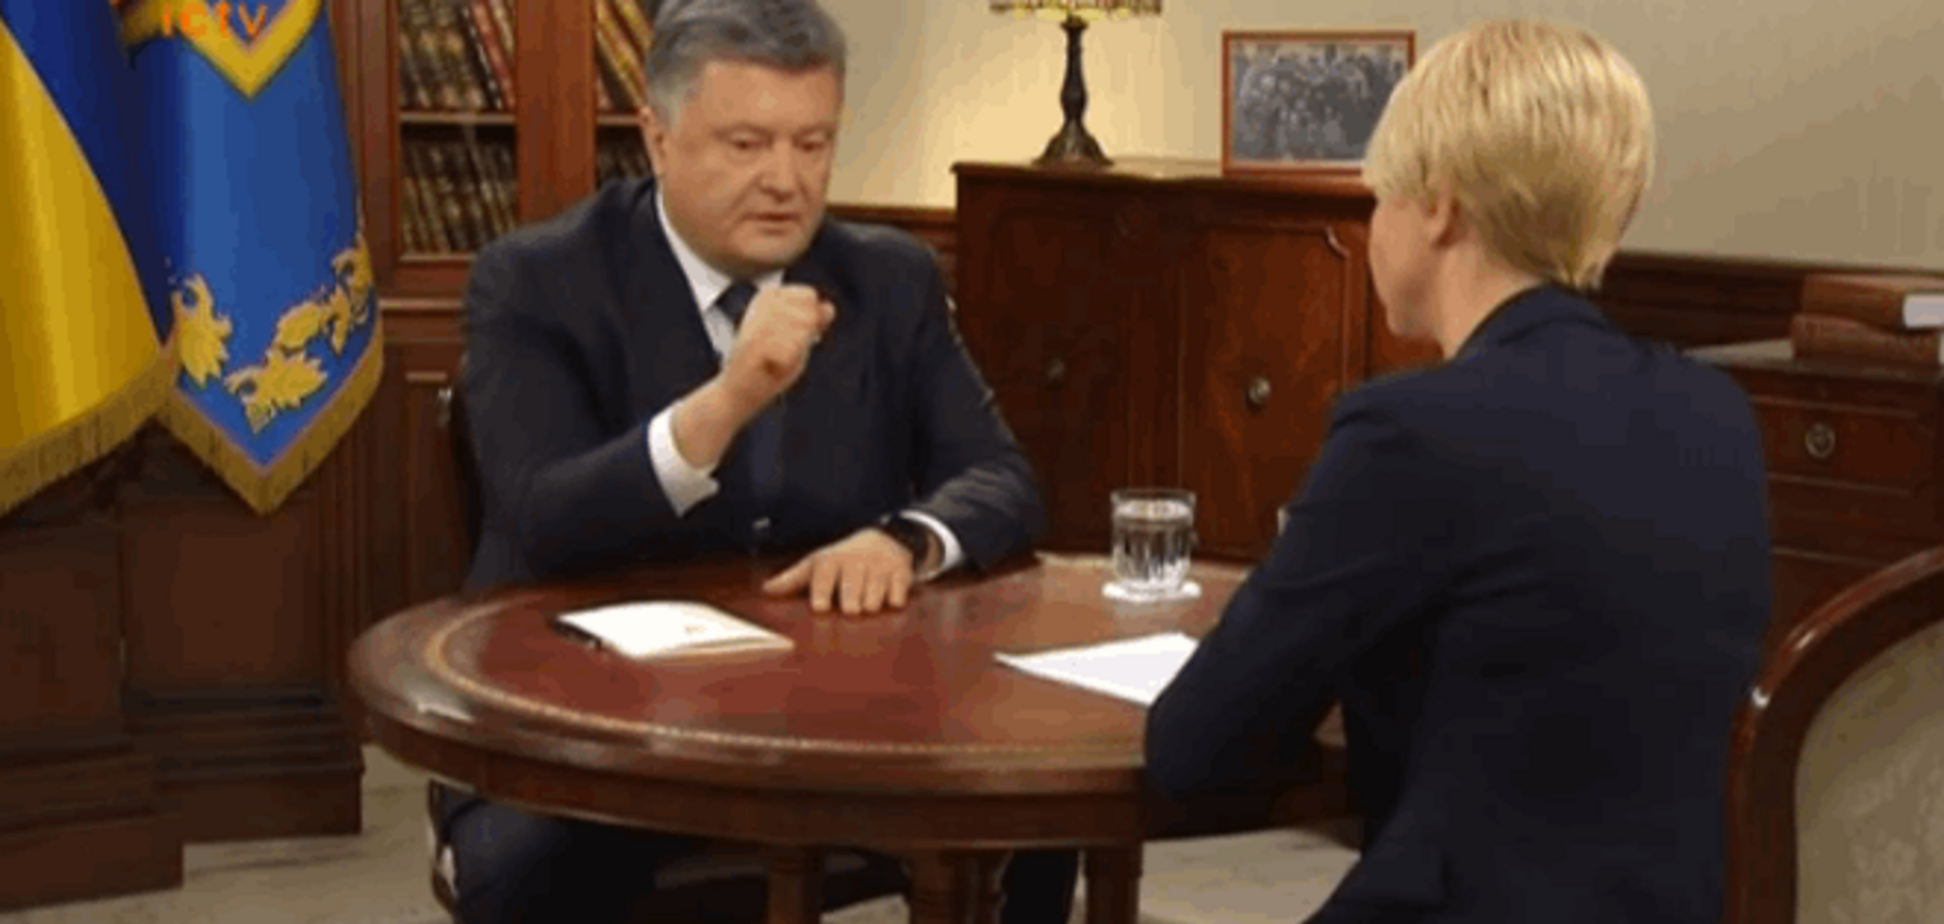 Порошенко: Украина запустила конституционный процесс, опережая график